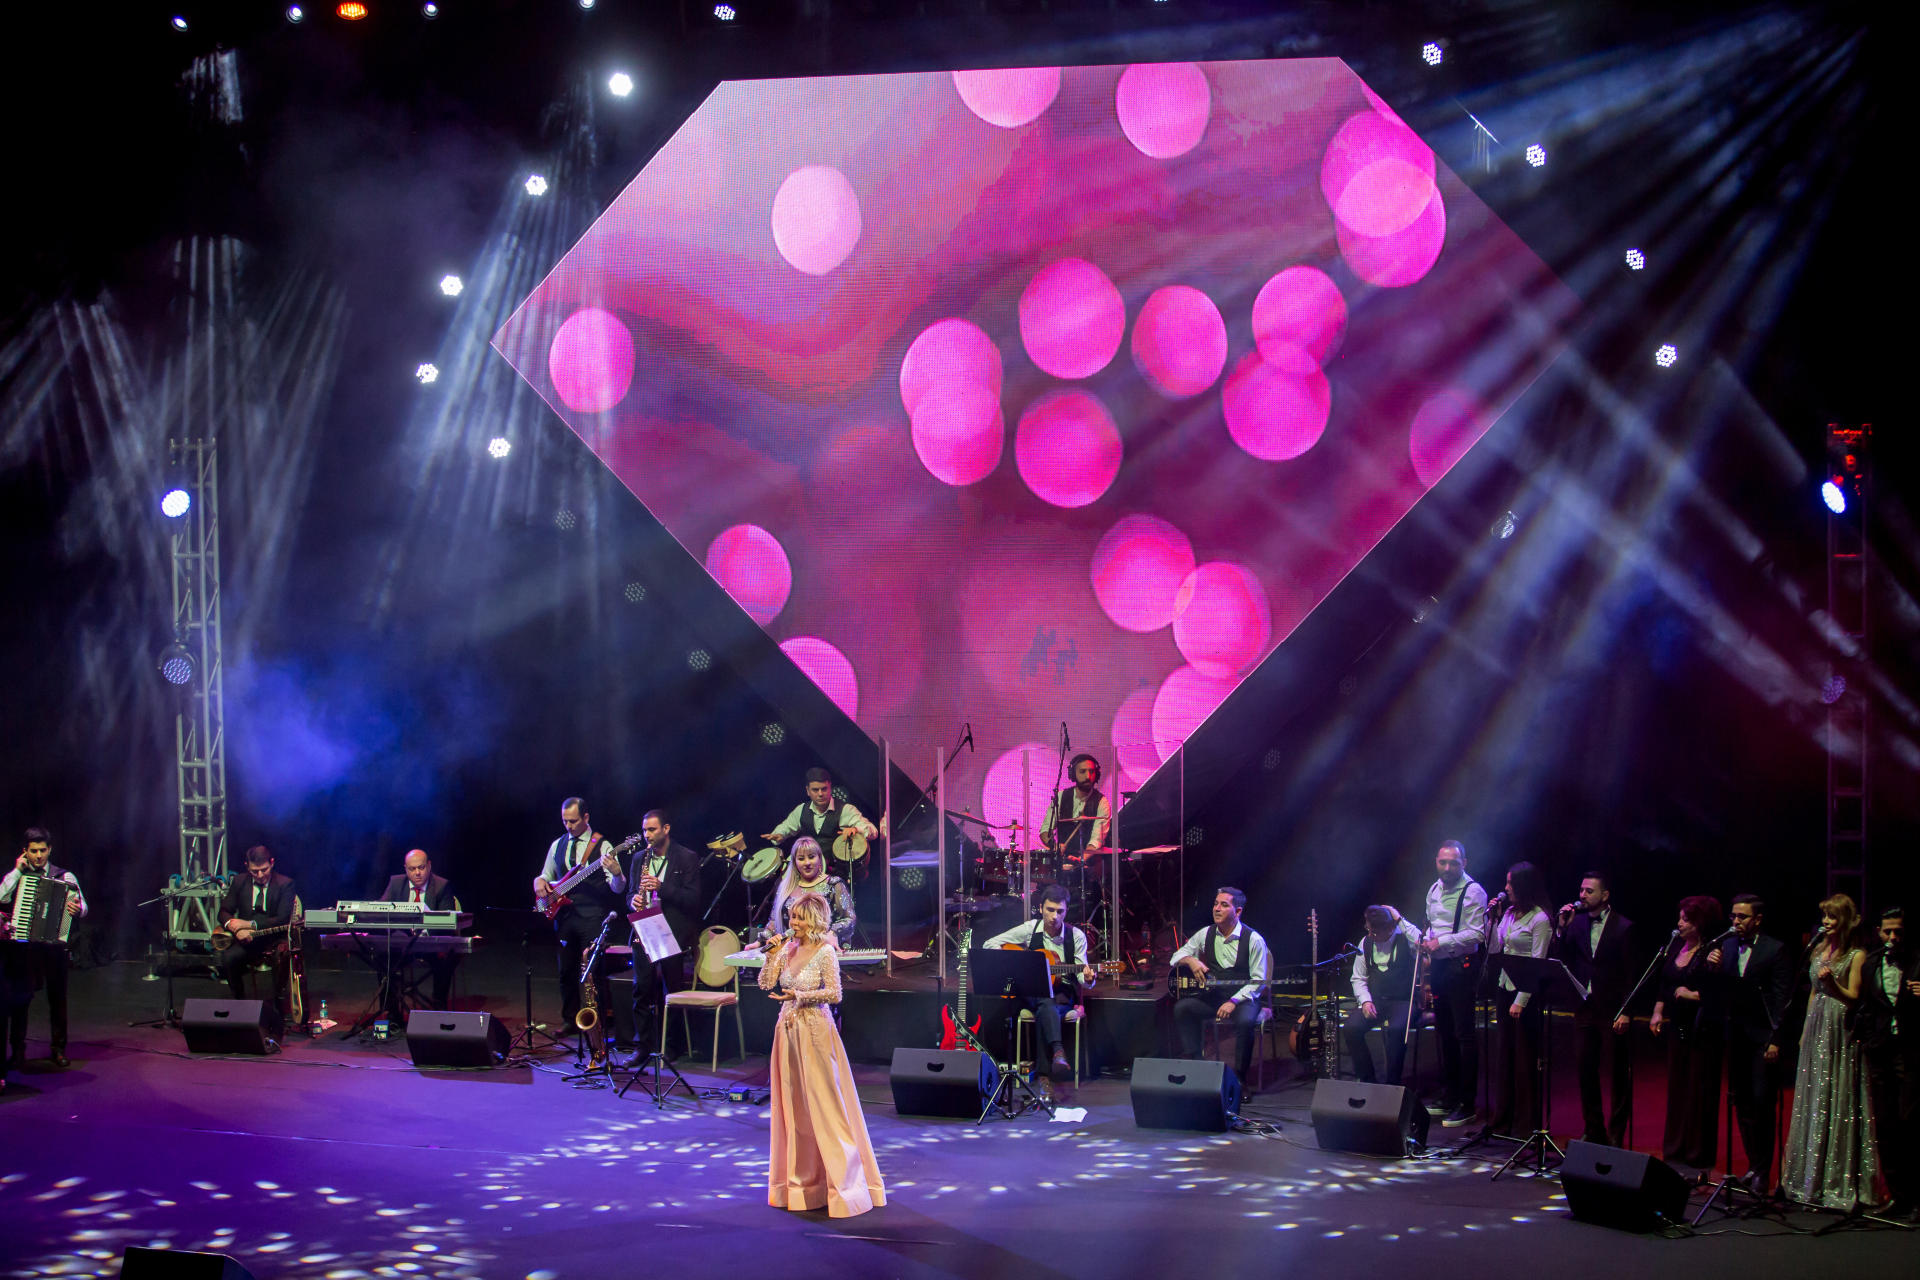 Концерт Бриллиант Дадашовой "Жить с любовью намного прекраснее": овации, букеты цветов (ВИДЕО, ФОТО)